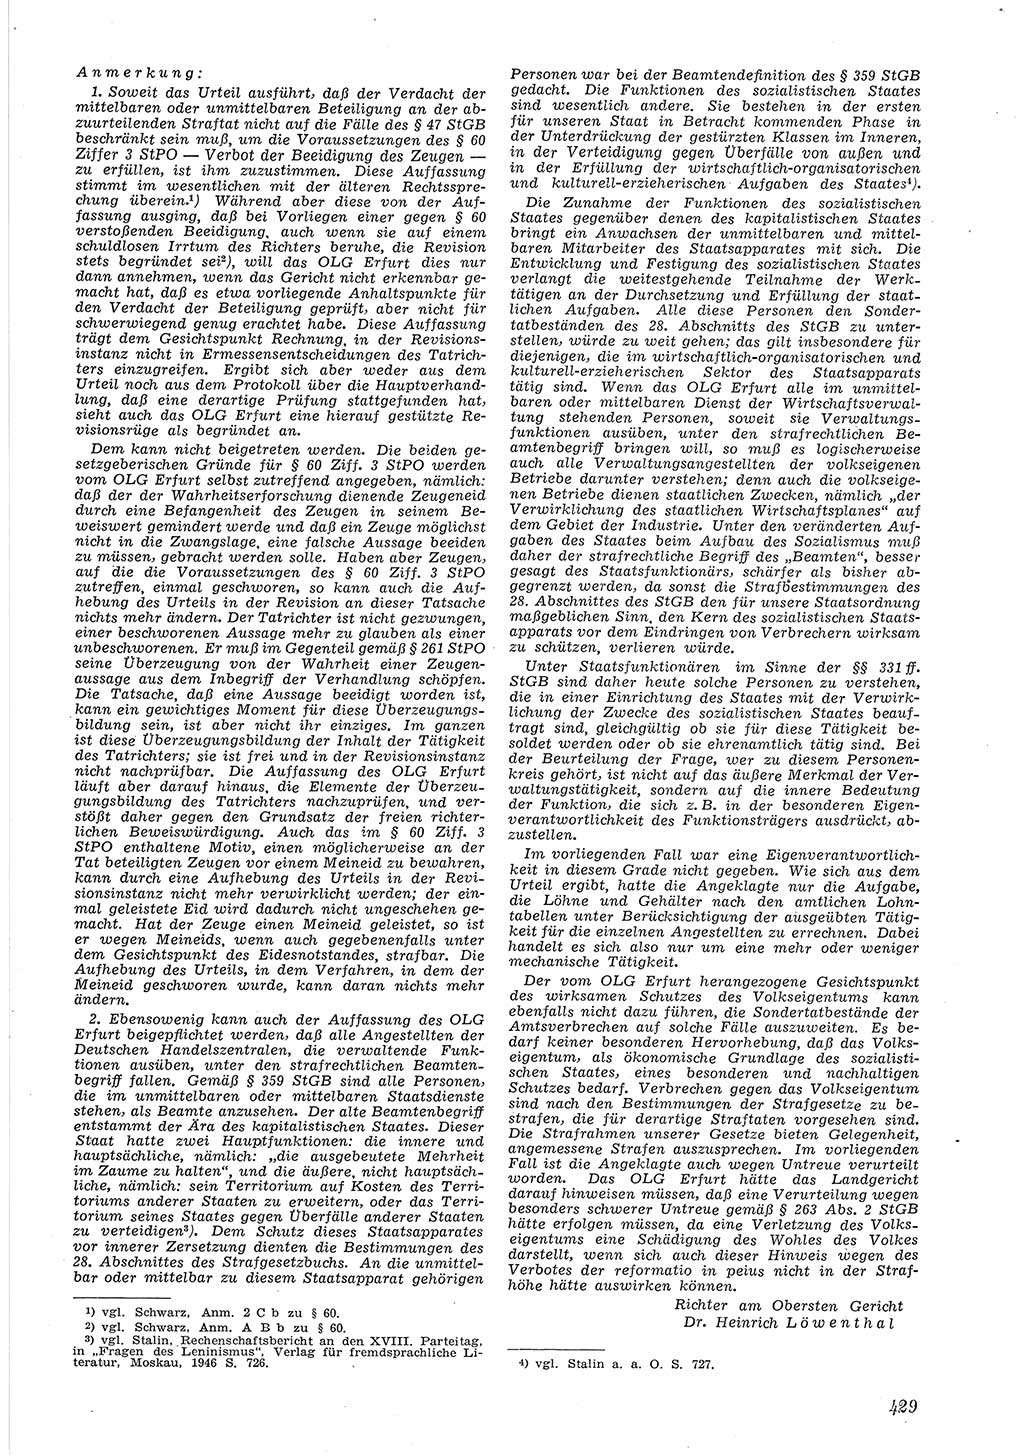 Neue Justiz (NJ), Zeitschrift für Recht und Rechtswissenschaft [Deutsche Demokratische Republik (DDR)], 6. Jahrgang 1952, Seite 429 (NJ DDR 1952, S. 429)